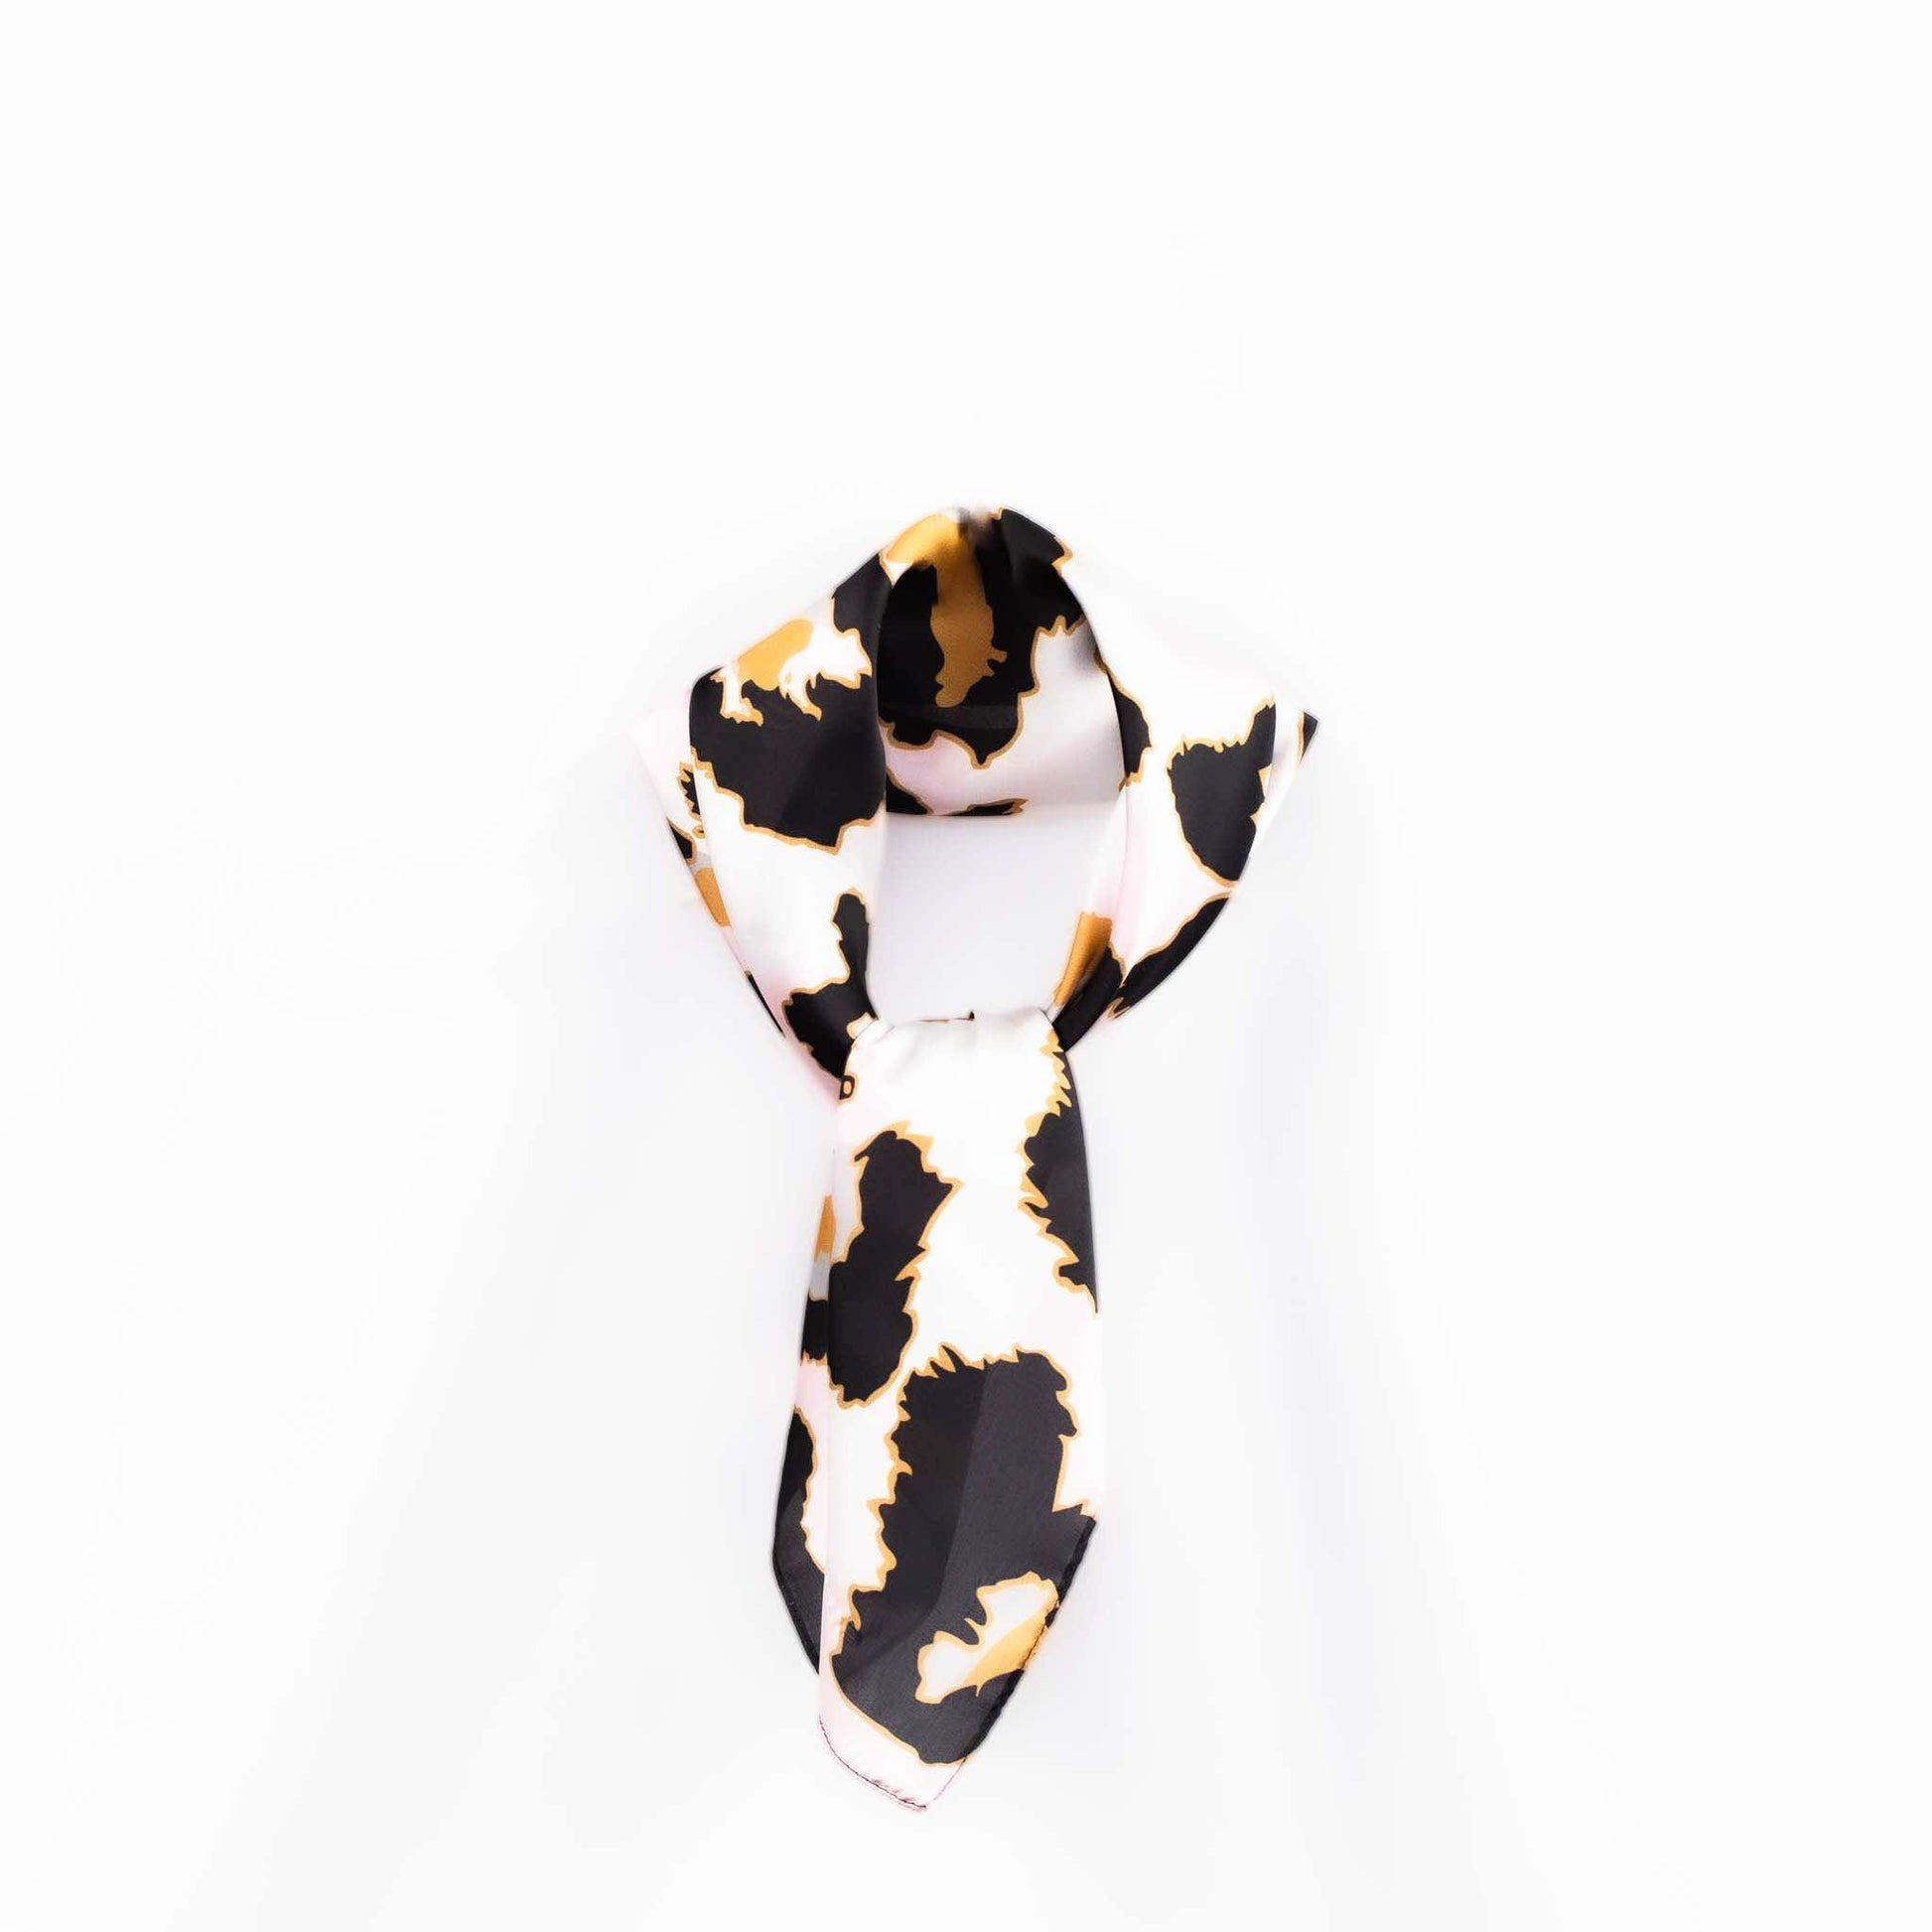 Eșarfă damă din satin cu animal print în forme mari, 60 x 60 cm - Roz, Negru 